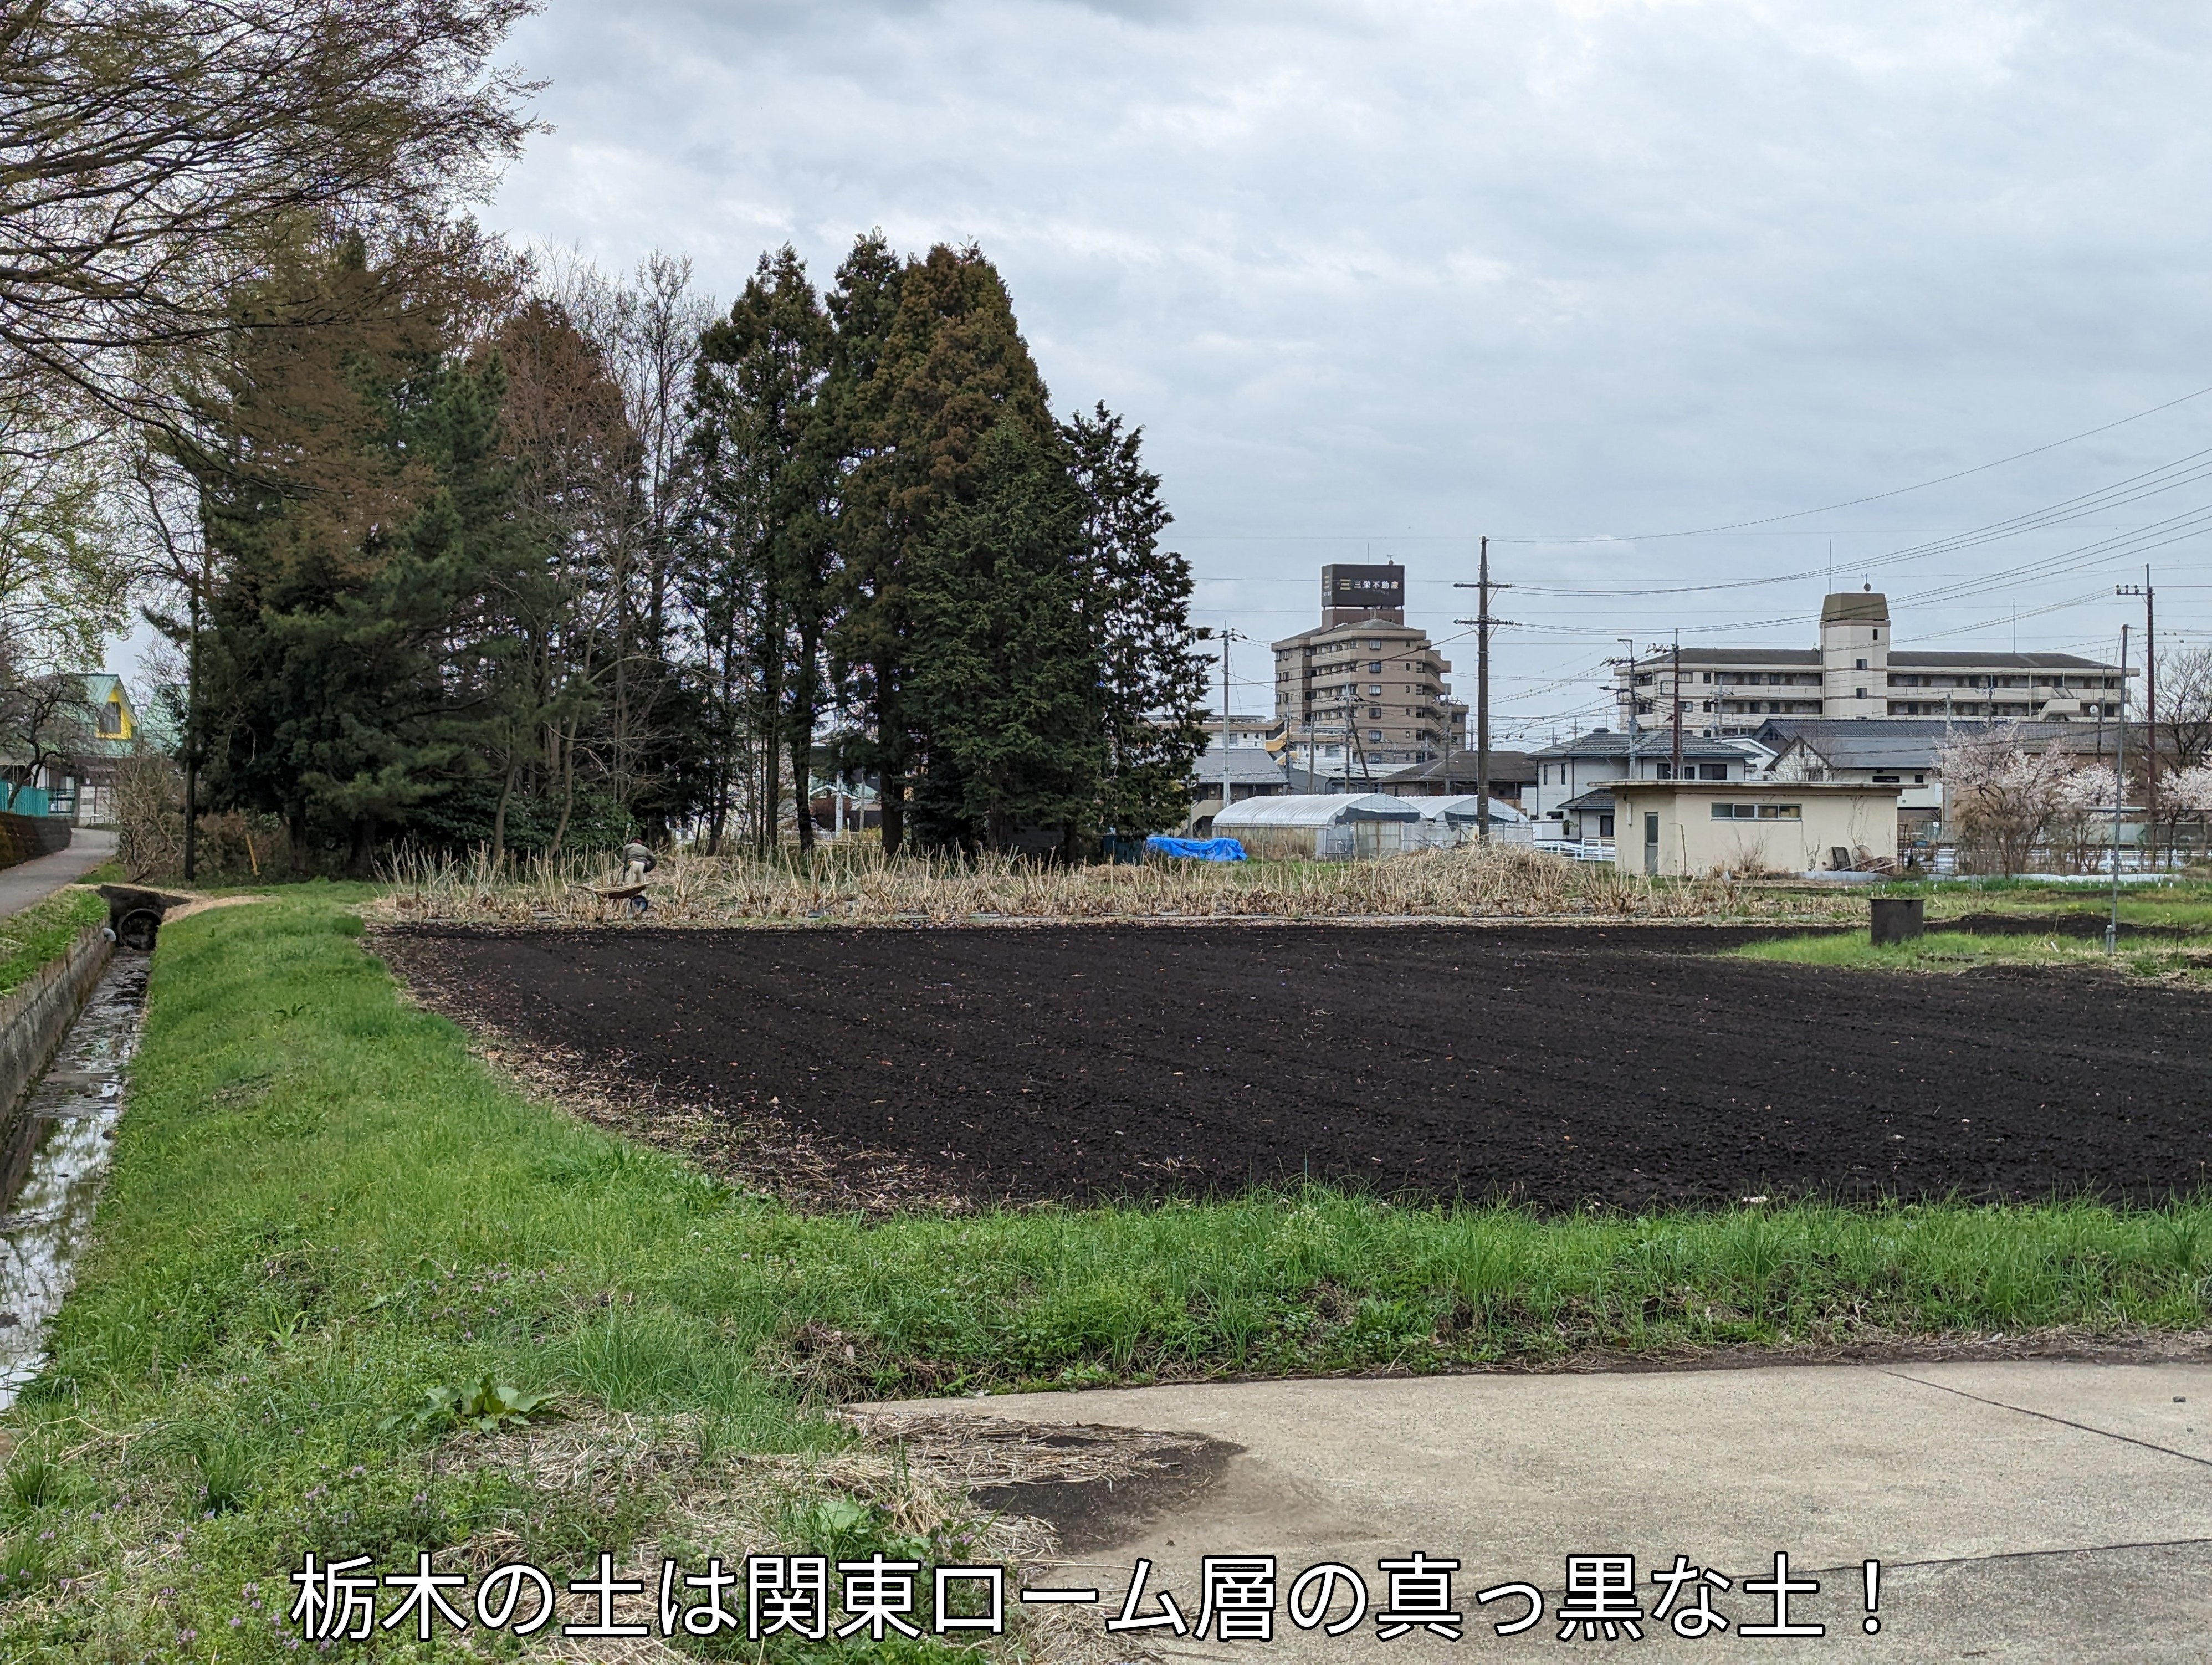 栃木の土は真っ黒な関東ローム層の土